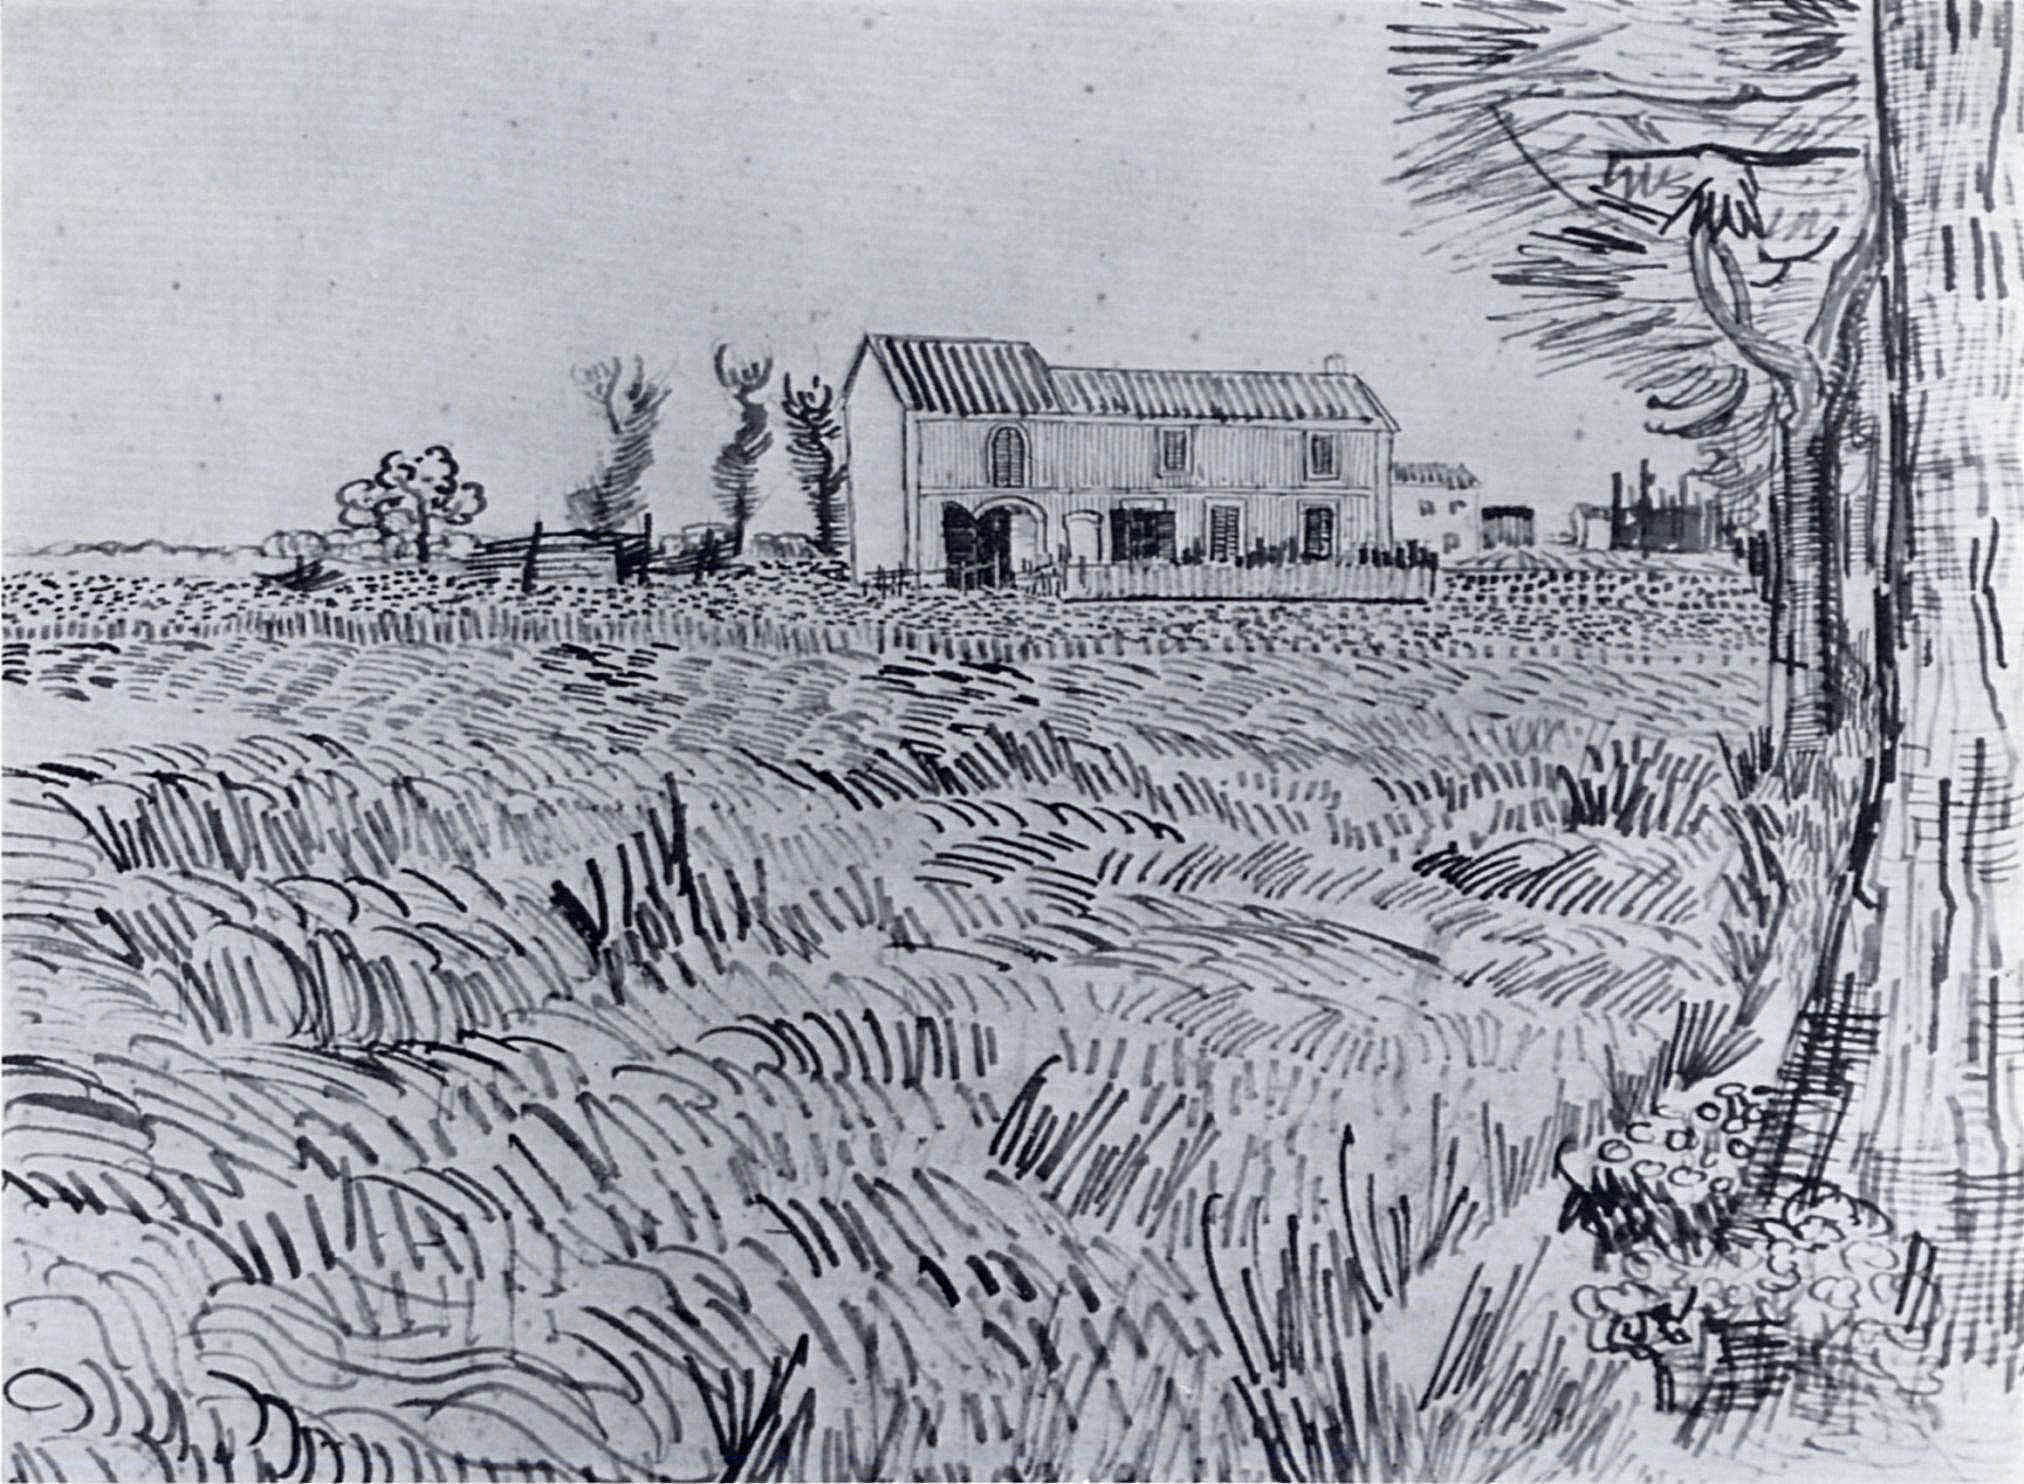 Farmhouse in a Wheat Field, 1888 Vincent van Gogh